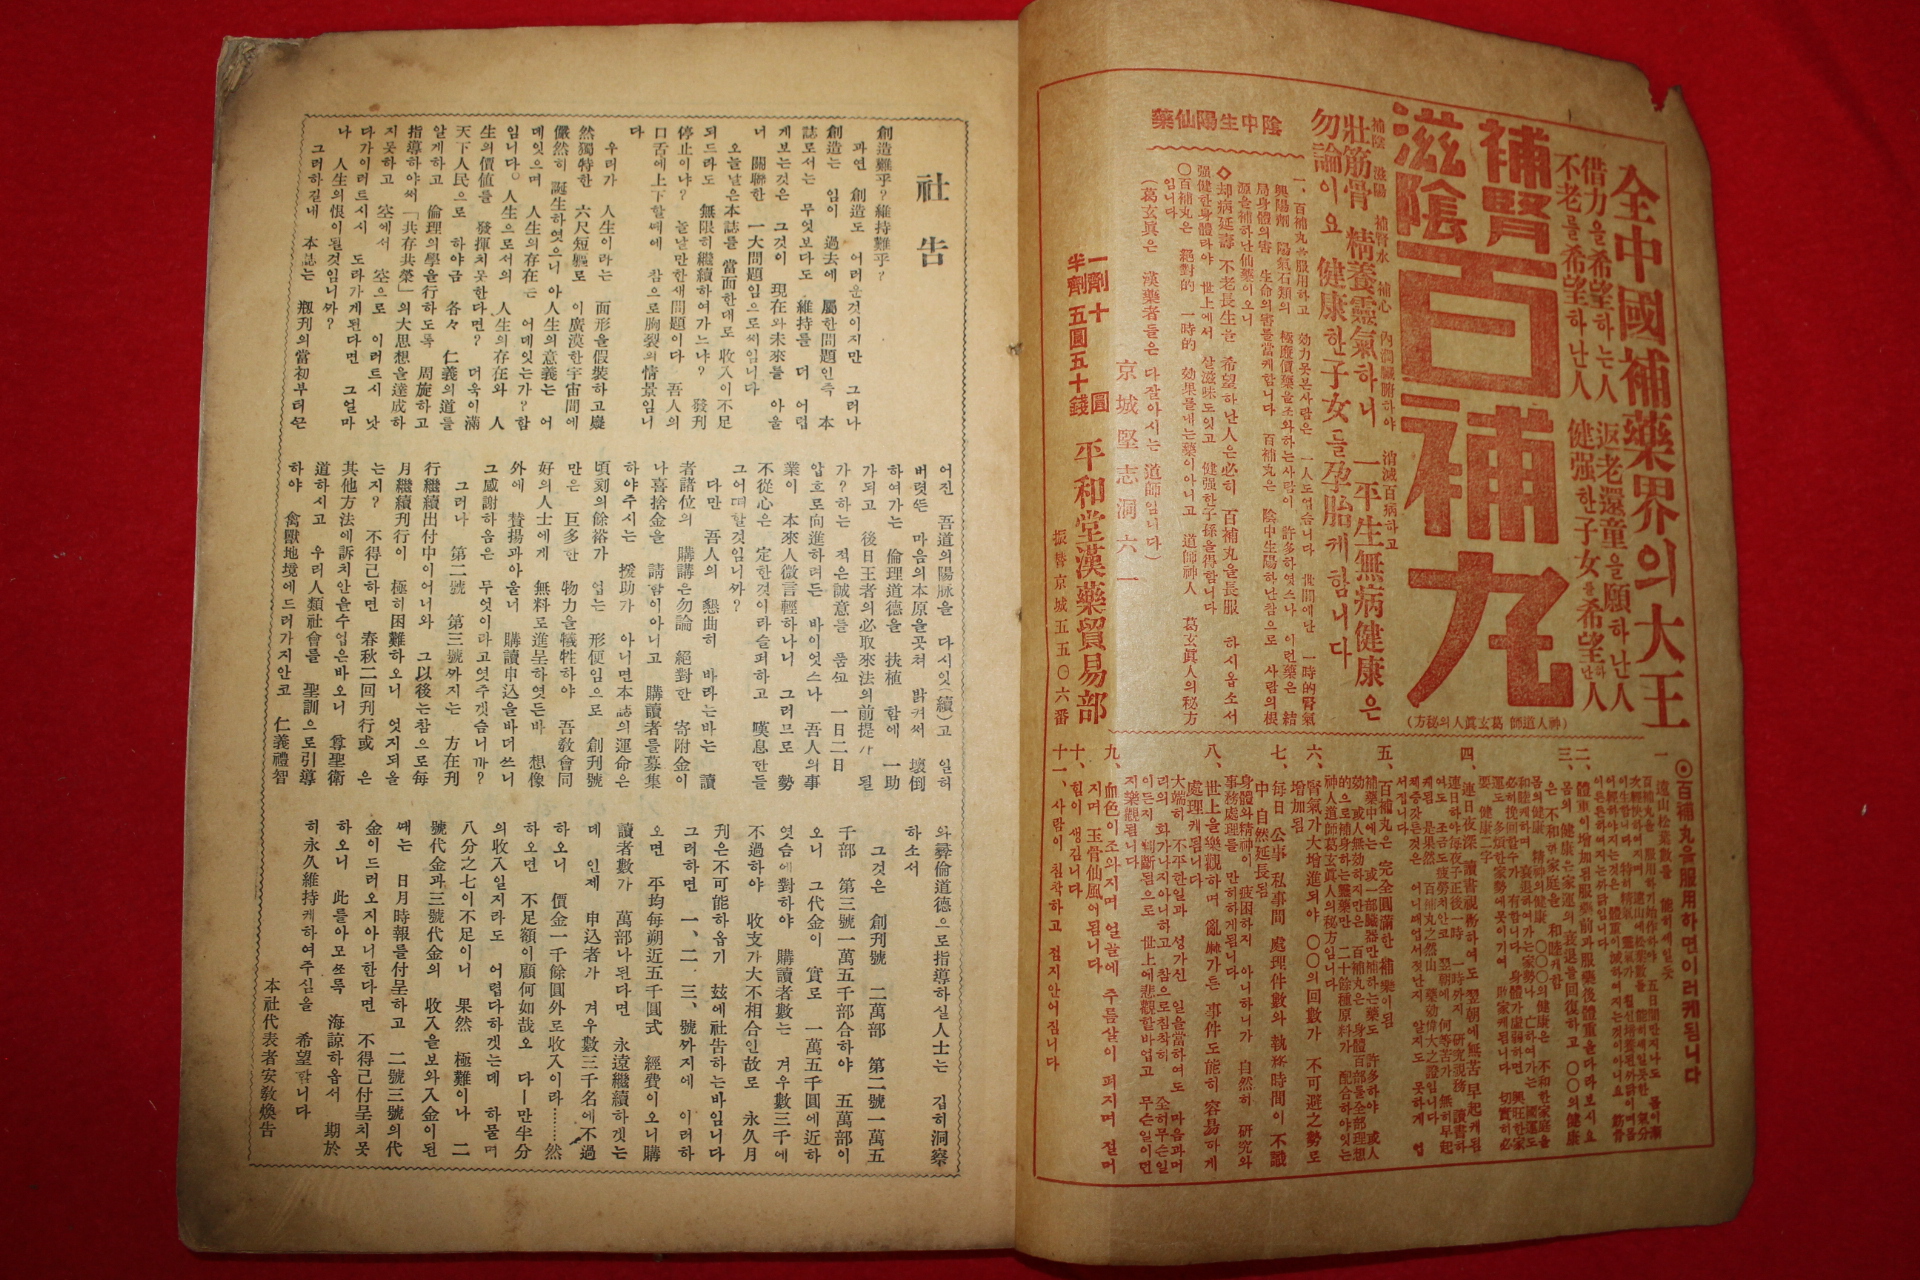 1935년 국한문혼용 일월시보(日月時報) 제3호